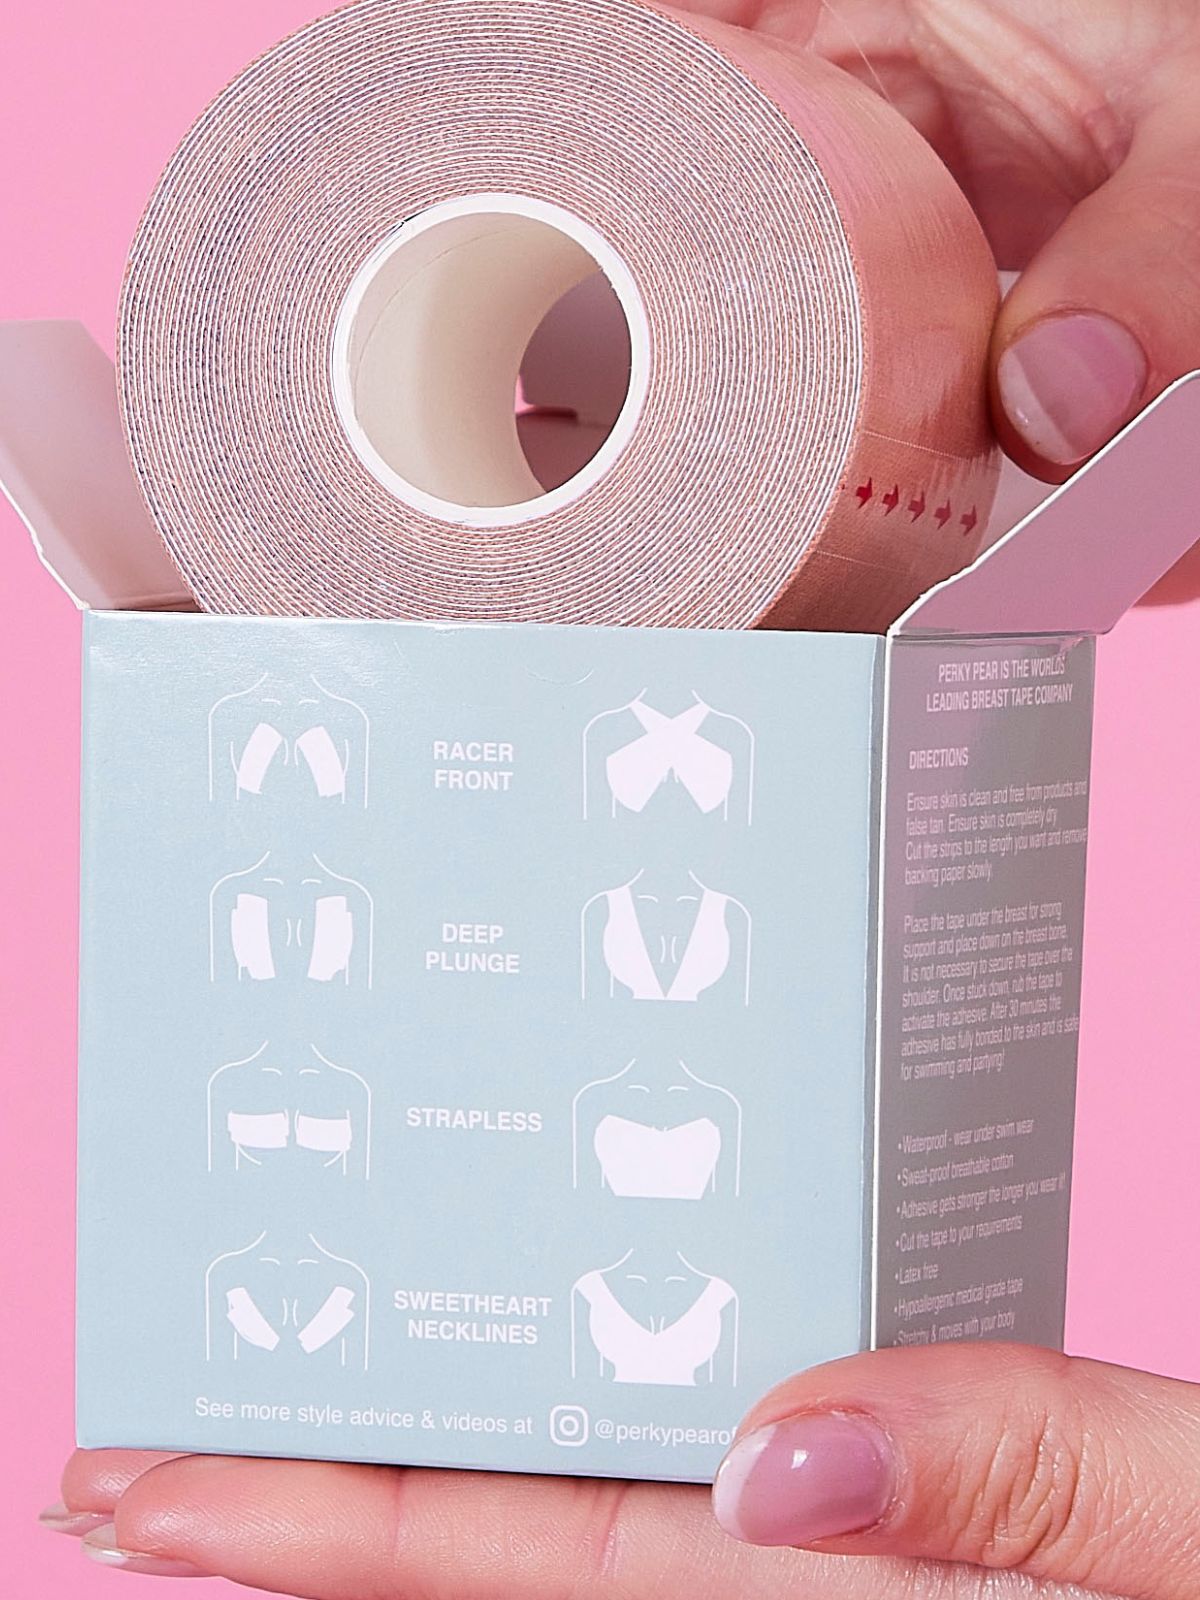 Perky Pear DIY Breast Lift Tape / Black